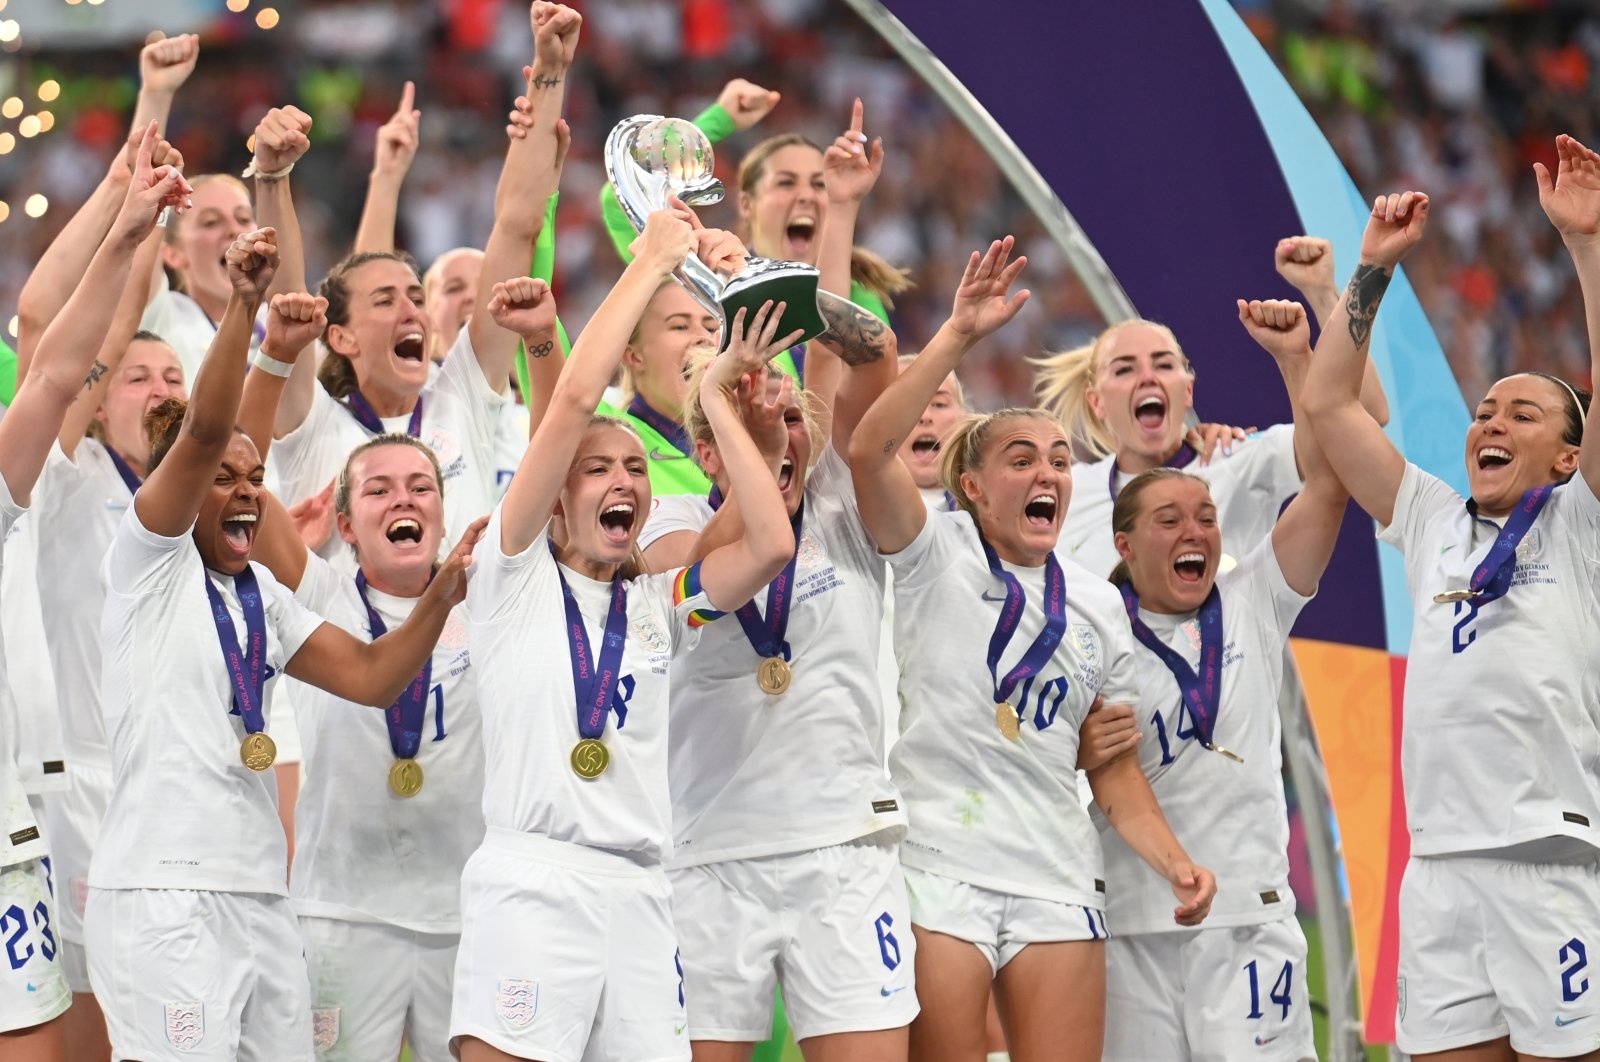 Inggris mengalahkan Jerman untuk memenangkan gelar Euro 2022 wanita bersejarah